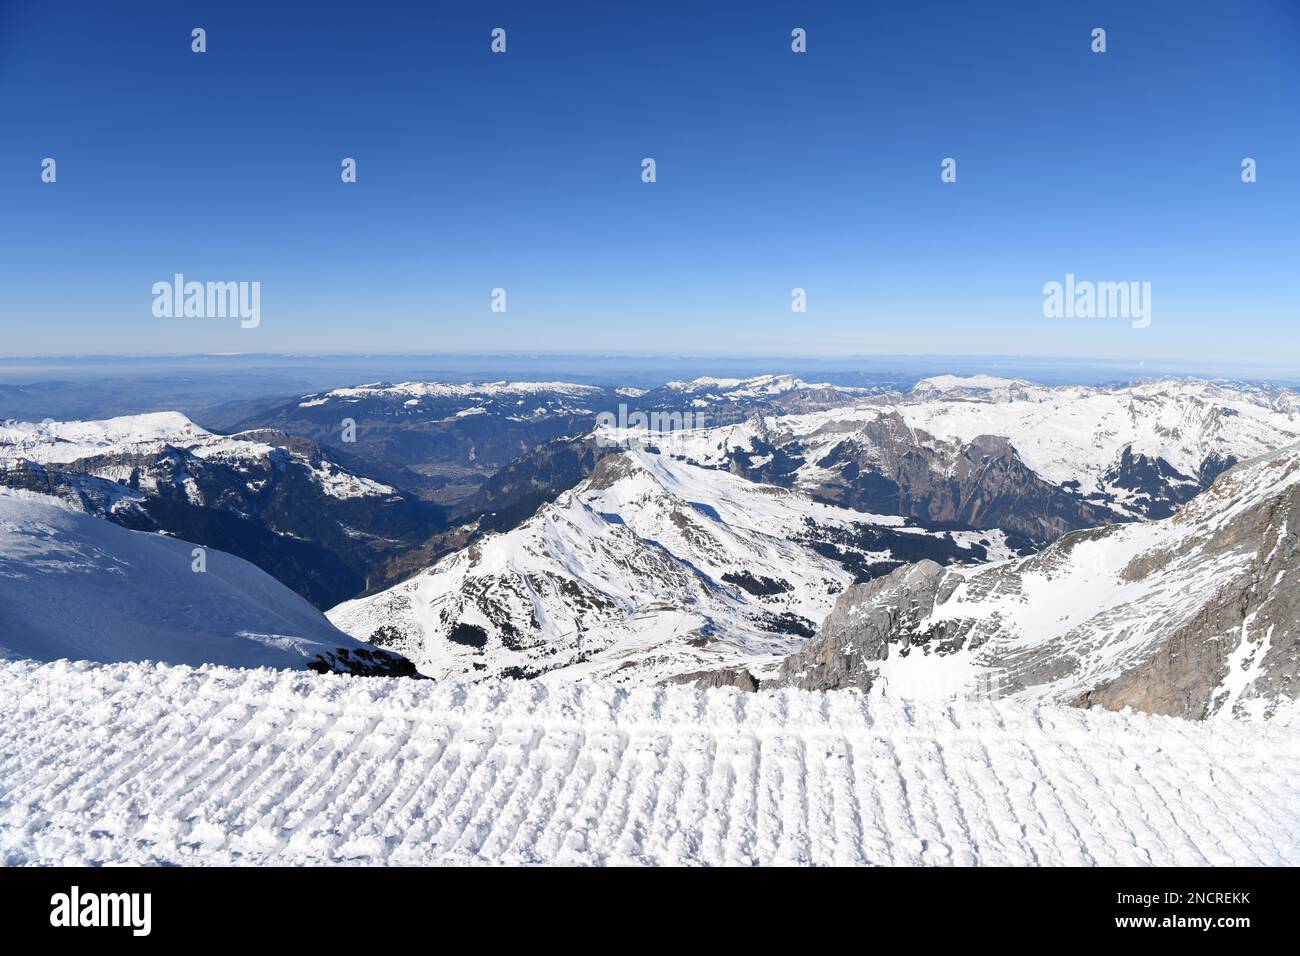 (230215) -- GINEVRA, 15 febbraio 2023 (Xinhua) -- questa foto scattata dalla Terrazza d'osservazione Sphinx sul Monte Jungfrau a 3.571 metri sul livello del mare il 14 febbraio 2023 mostra il ghiacciaio Aletsch in Svizzera. Un gruppo di 25 persone provenienti dalla Cina ha visitato la città di Lucerna e il famoso punto panoramico e resort per gli sport invernali Jungfrau nella Svizzera centrale il 13-14 febbraio, dopo tre anni di stato di pausa legato alla pandemia. "Sono molto entusiasta di rivederli", ha detto Cui Chenghai, un turista che ha frequentato la Svizzera prima dello scoppio della pandemia. "Sono passati tre anni ed e. Foto Stock